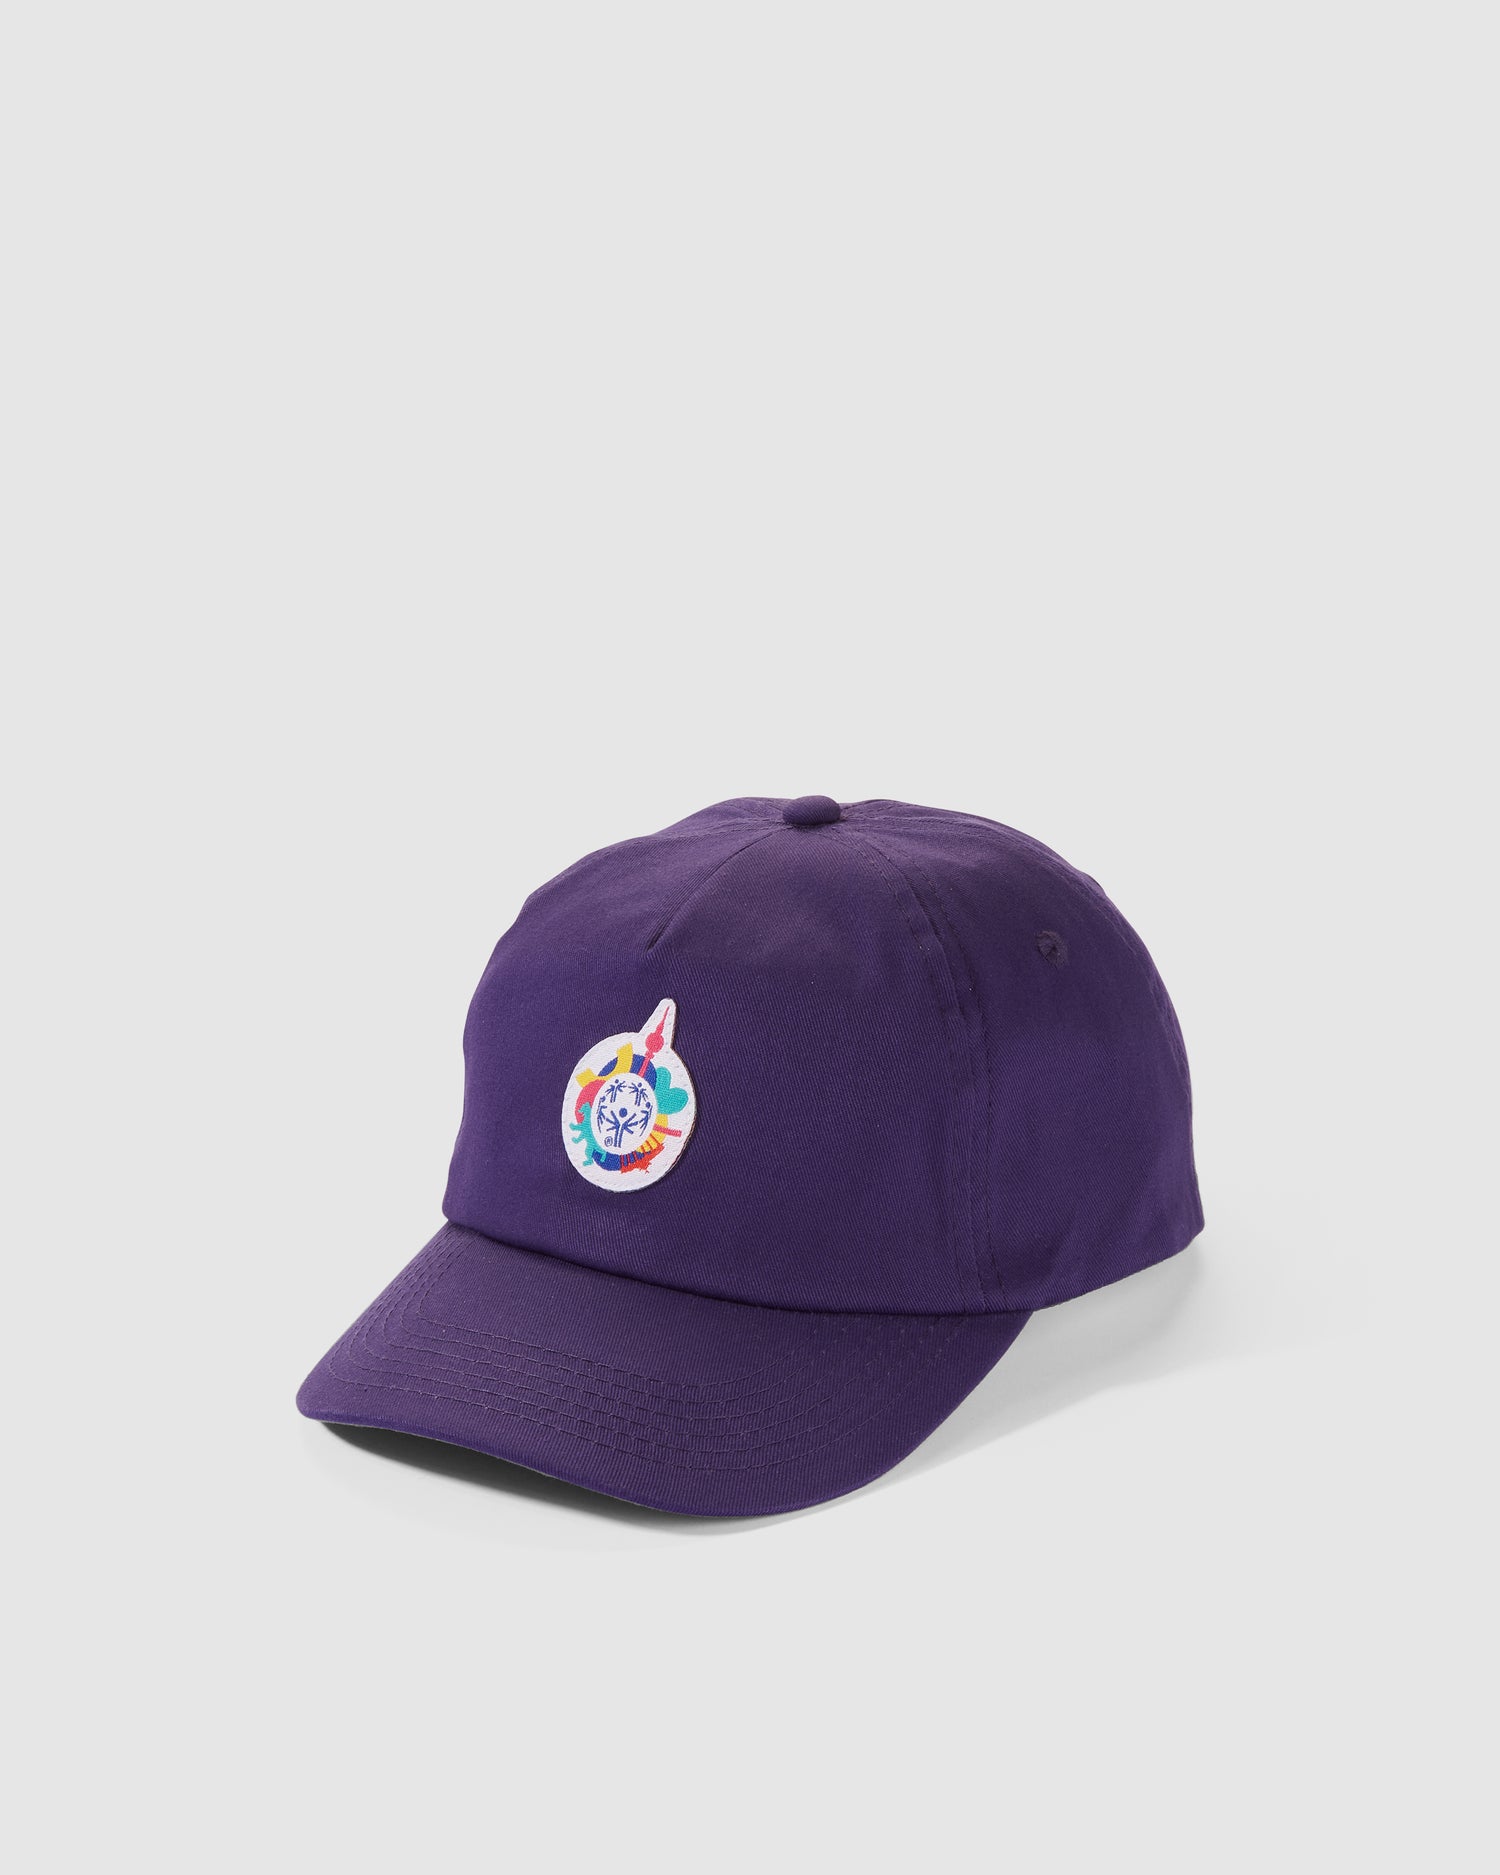 Cap in violett mit kleinem Weltspiele Logo